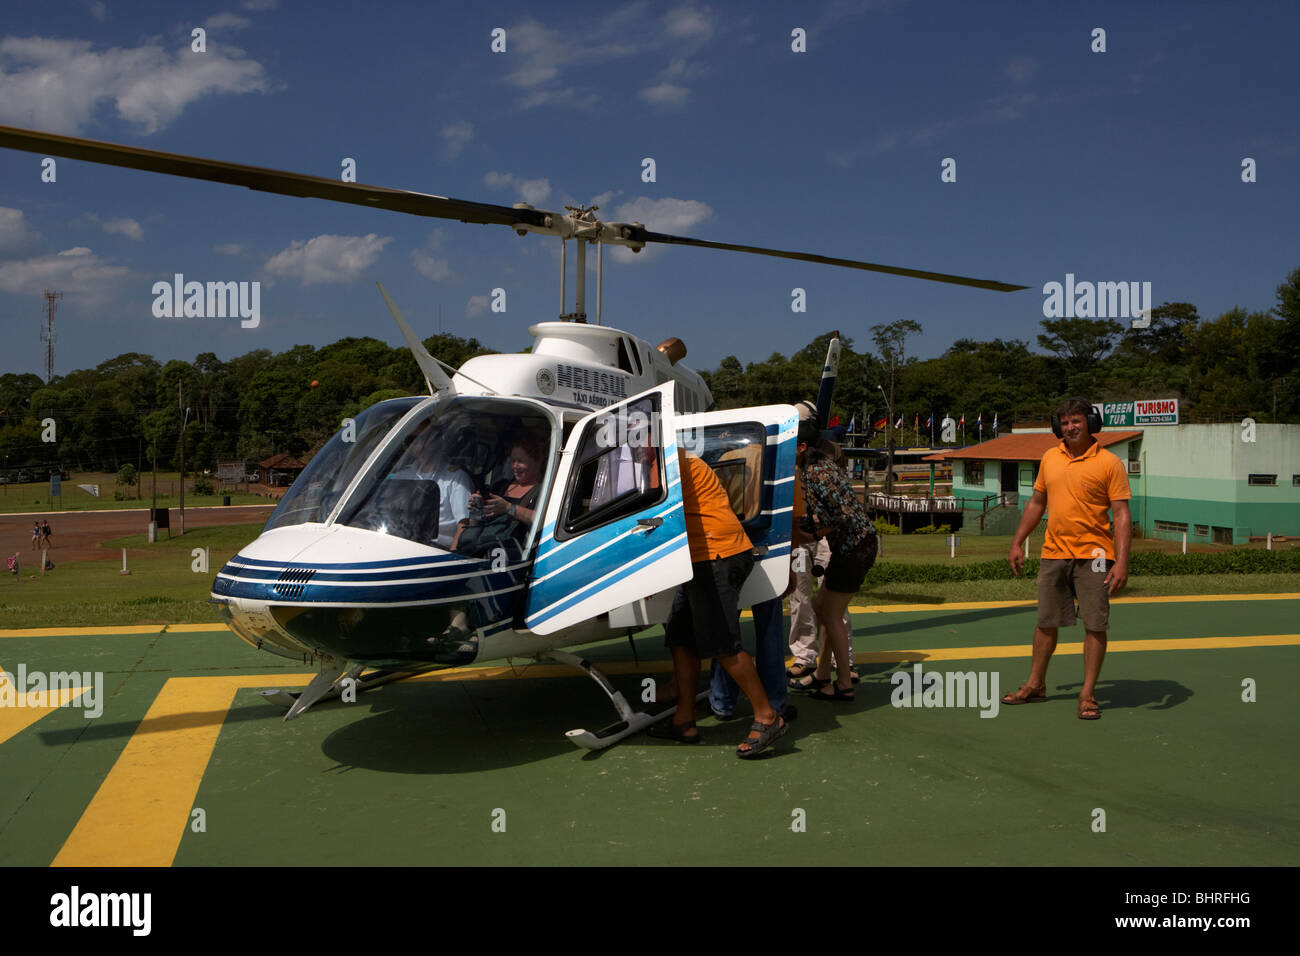 Helisul voyage touristique en hélicoptère au-dessus du parc national iguaçu Paraná, Brésil, Amérique du Sud, Banque D'Images